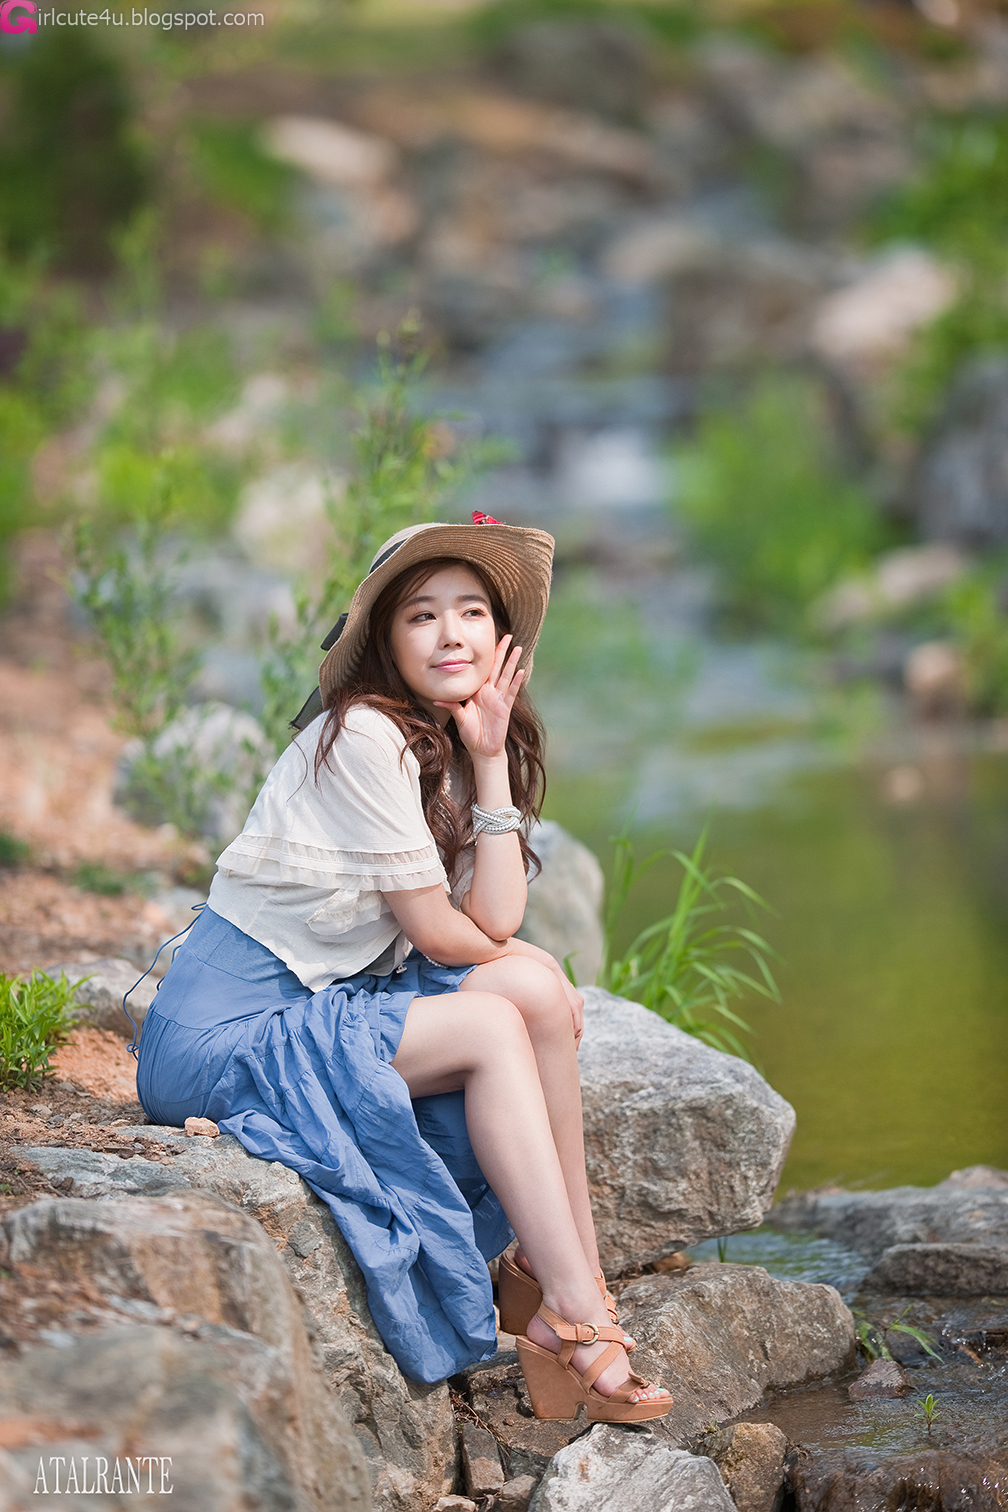 Cute Asian Girl: Jo Sang Hi - Beautiful Outdoor